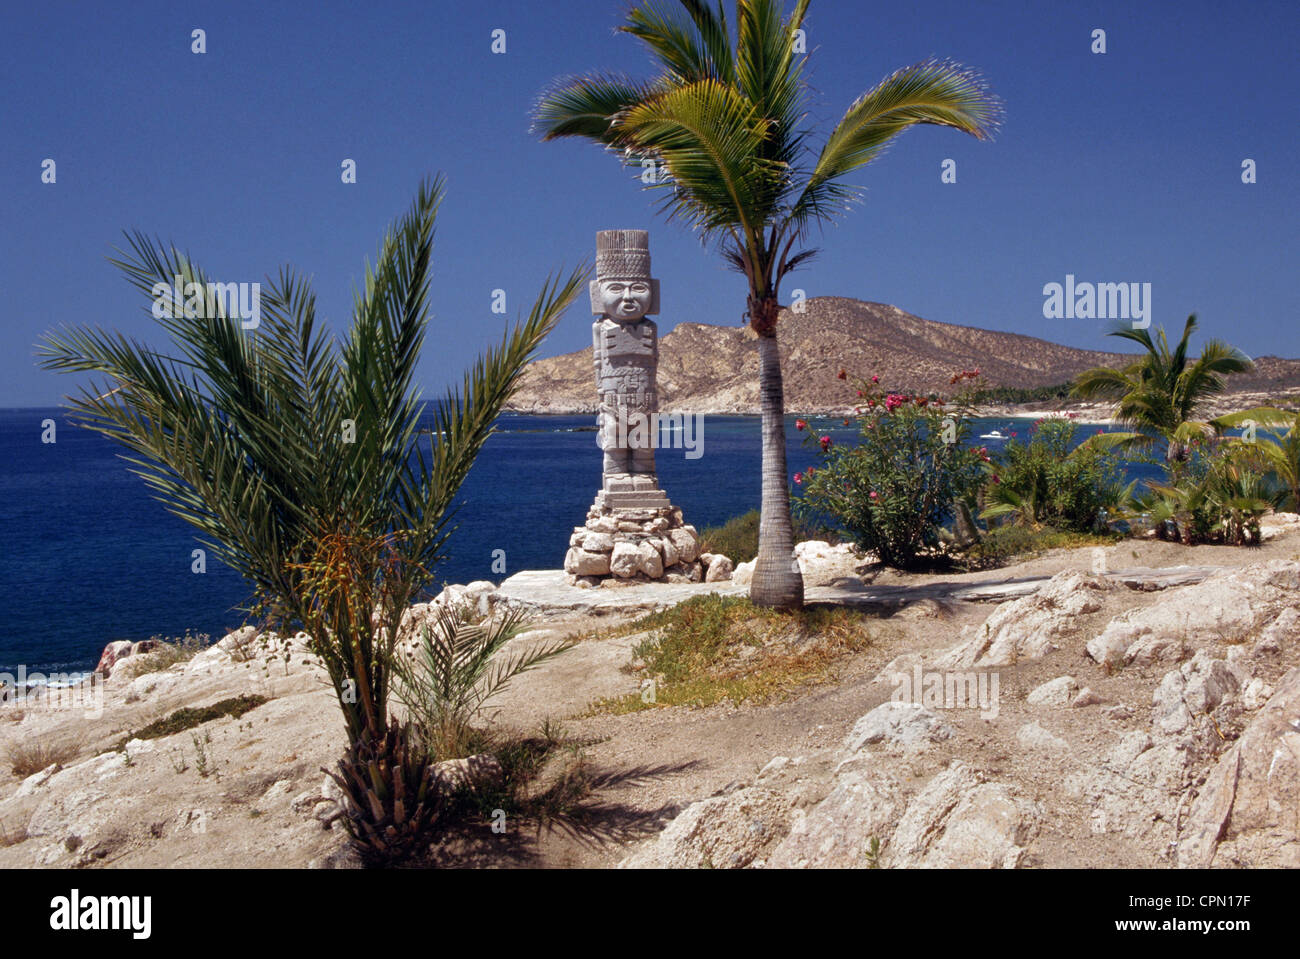 Un lone stone Aztec statua si trova in corrispondenza del bordo del mare di Cortez nel villaggio turistico città di Cabo San Lucas sulla penisola della Baja California in Messico. Foto Stock